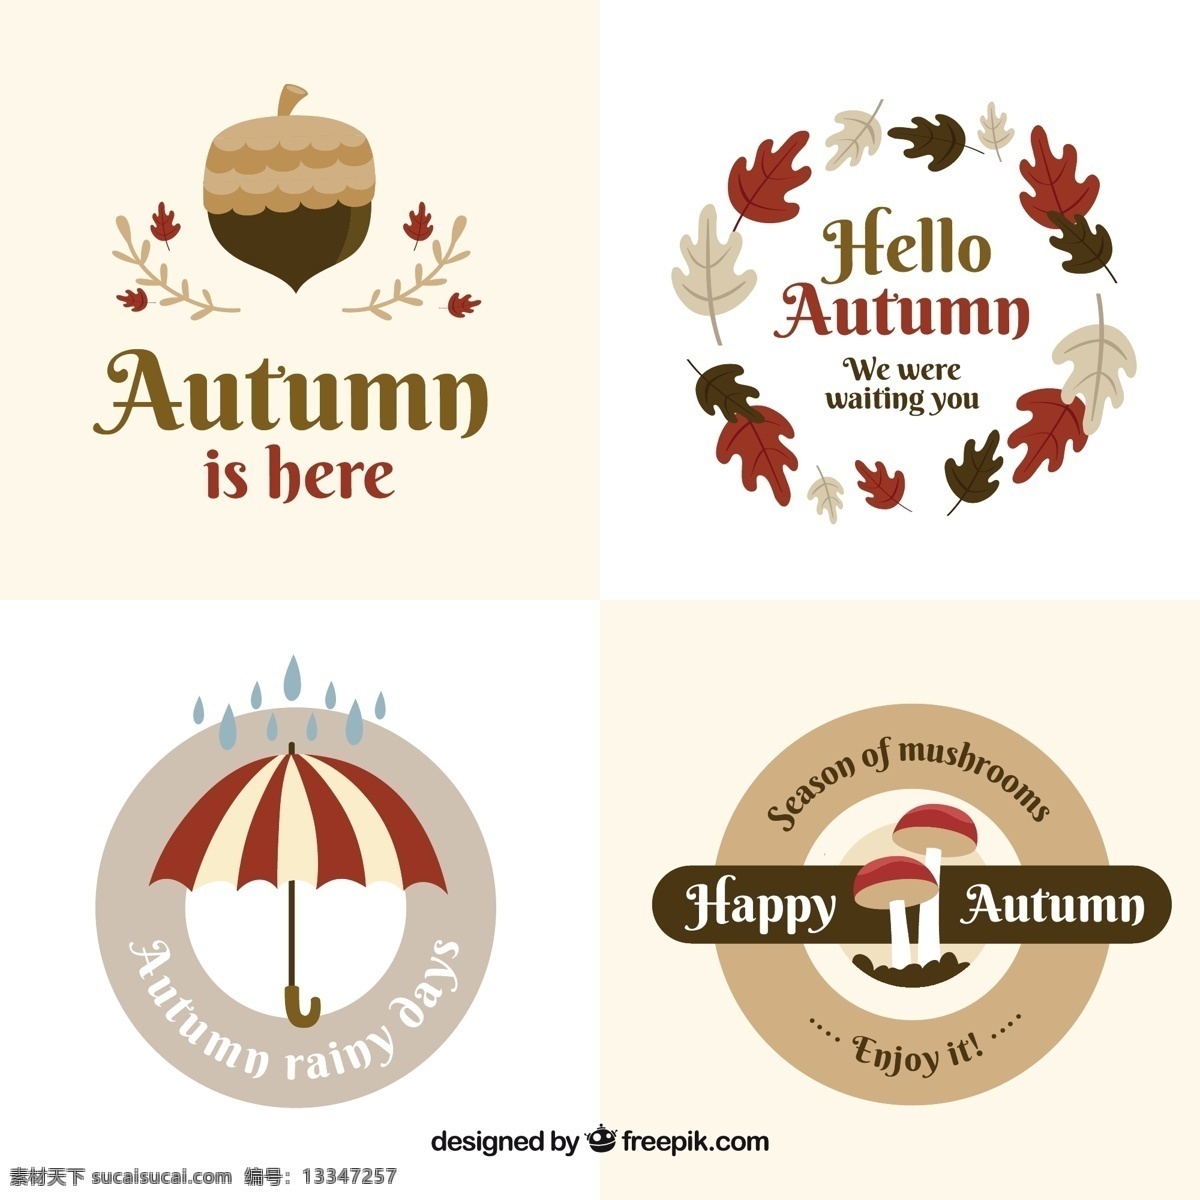 秋季 徽章 有趣 品种 标签 叶 自然 可爱 秋天 树叶 彩色 平 雨 伞 颜色 平面设计 温暖